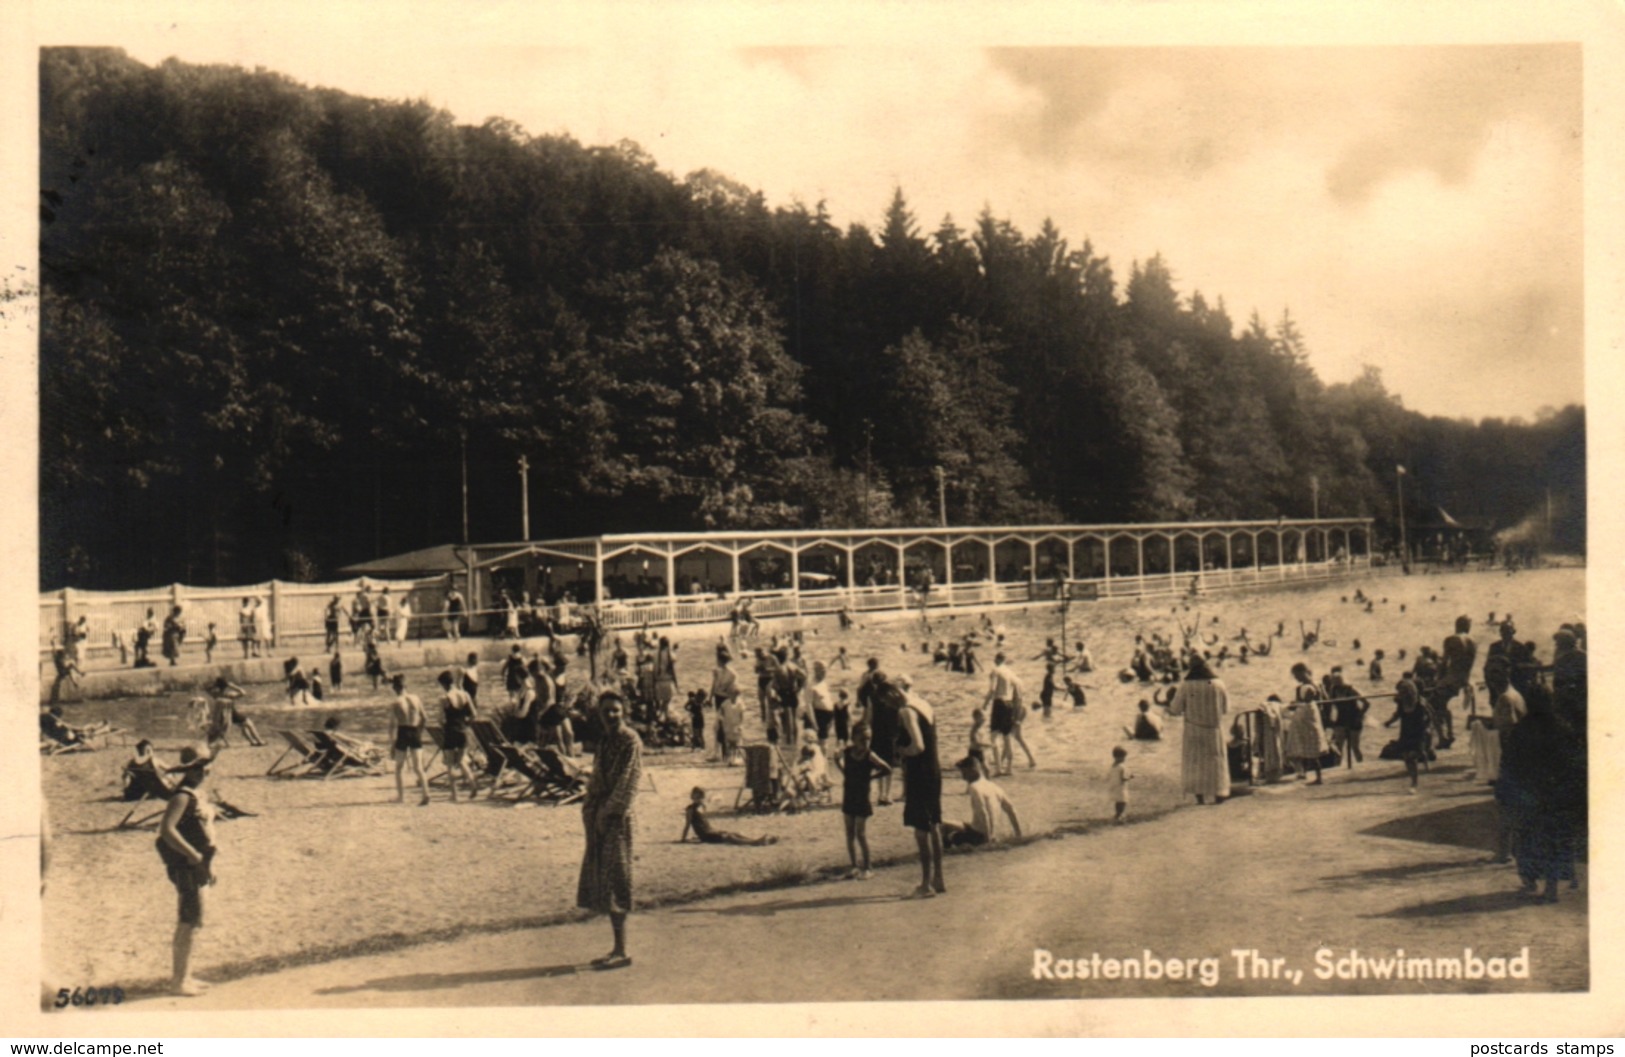 Rastenberg, Schwimmbad, 1930 - Rastenburg